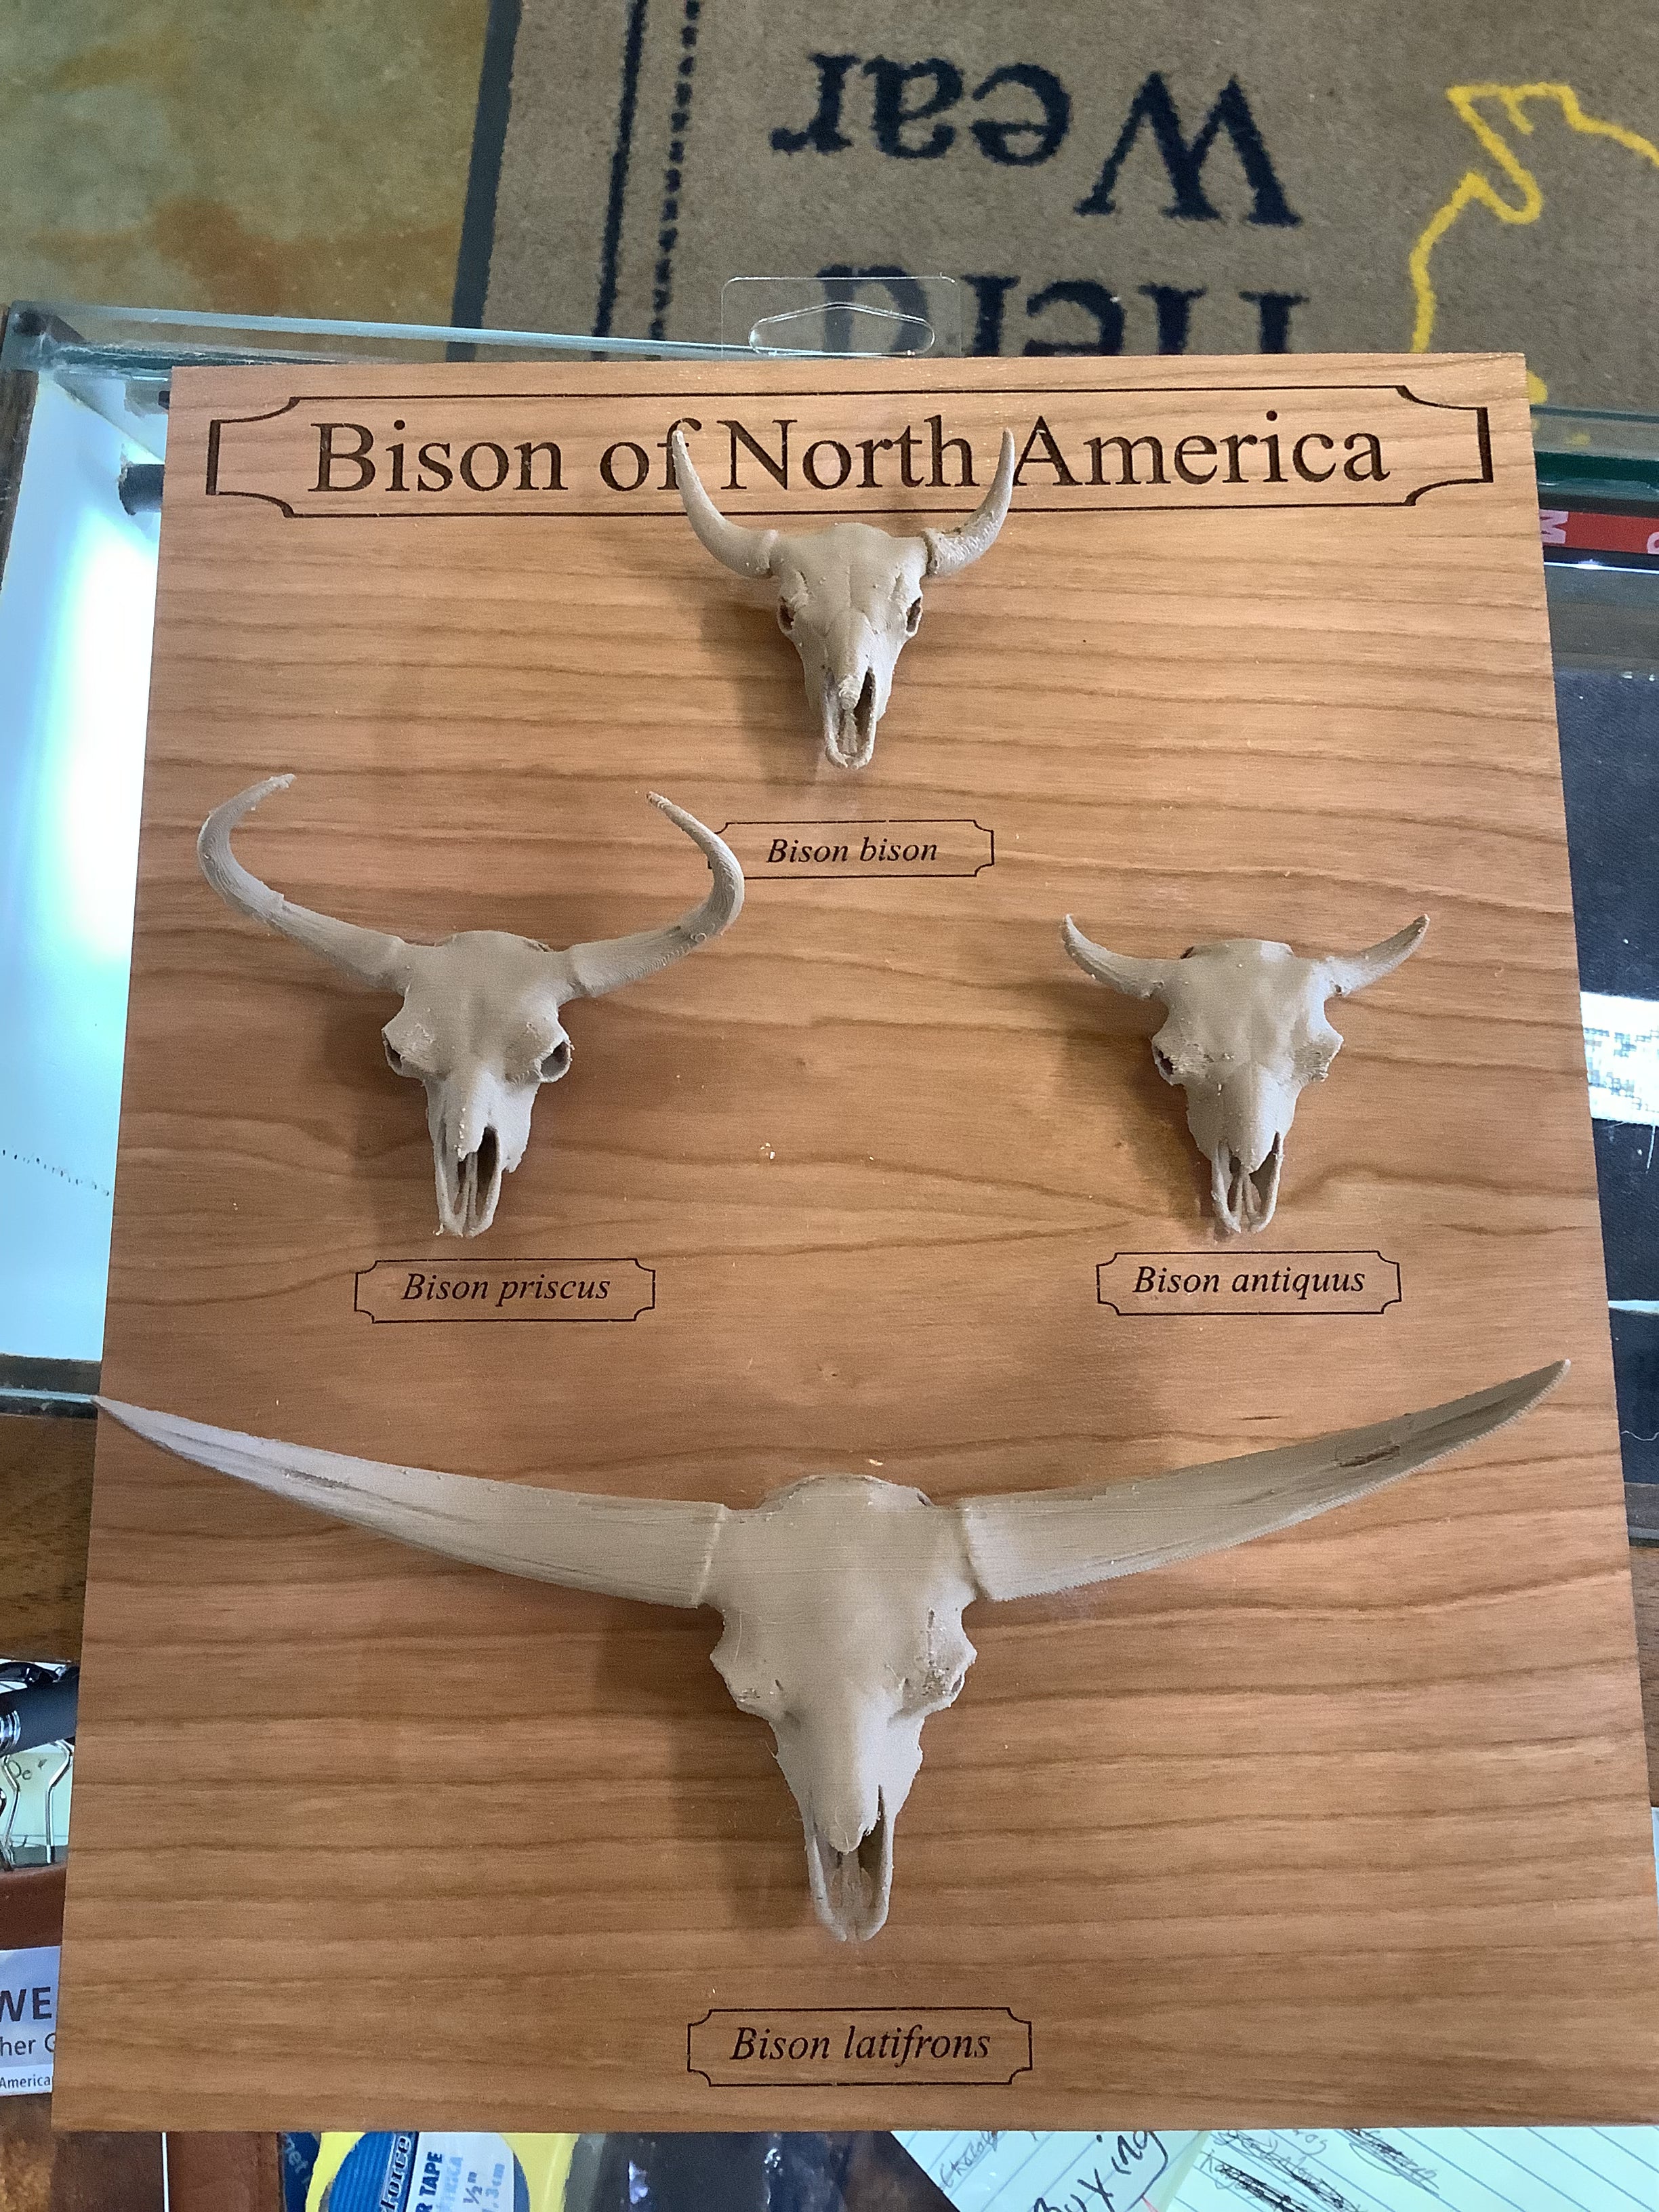 bison latifrons